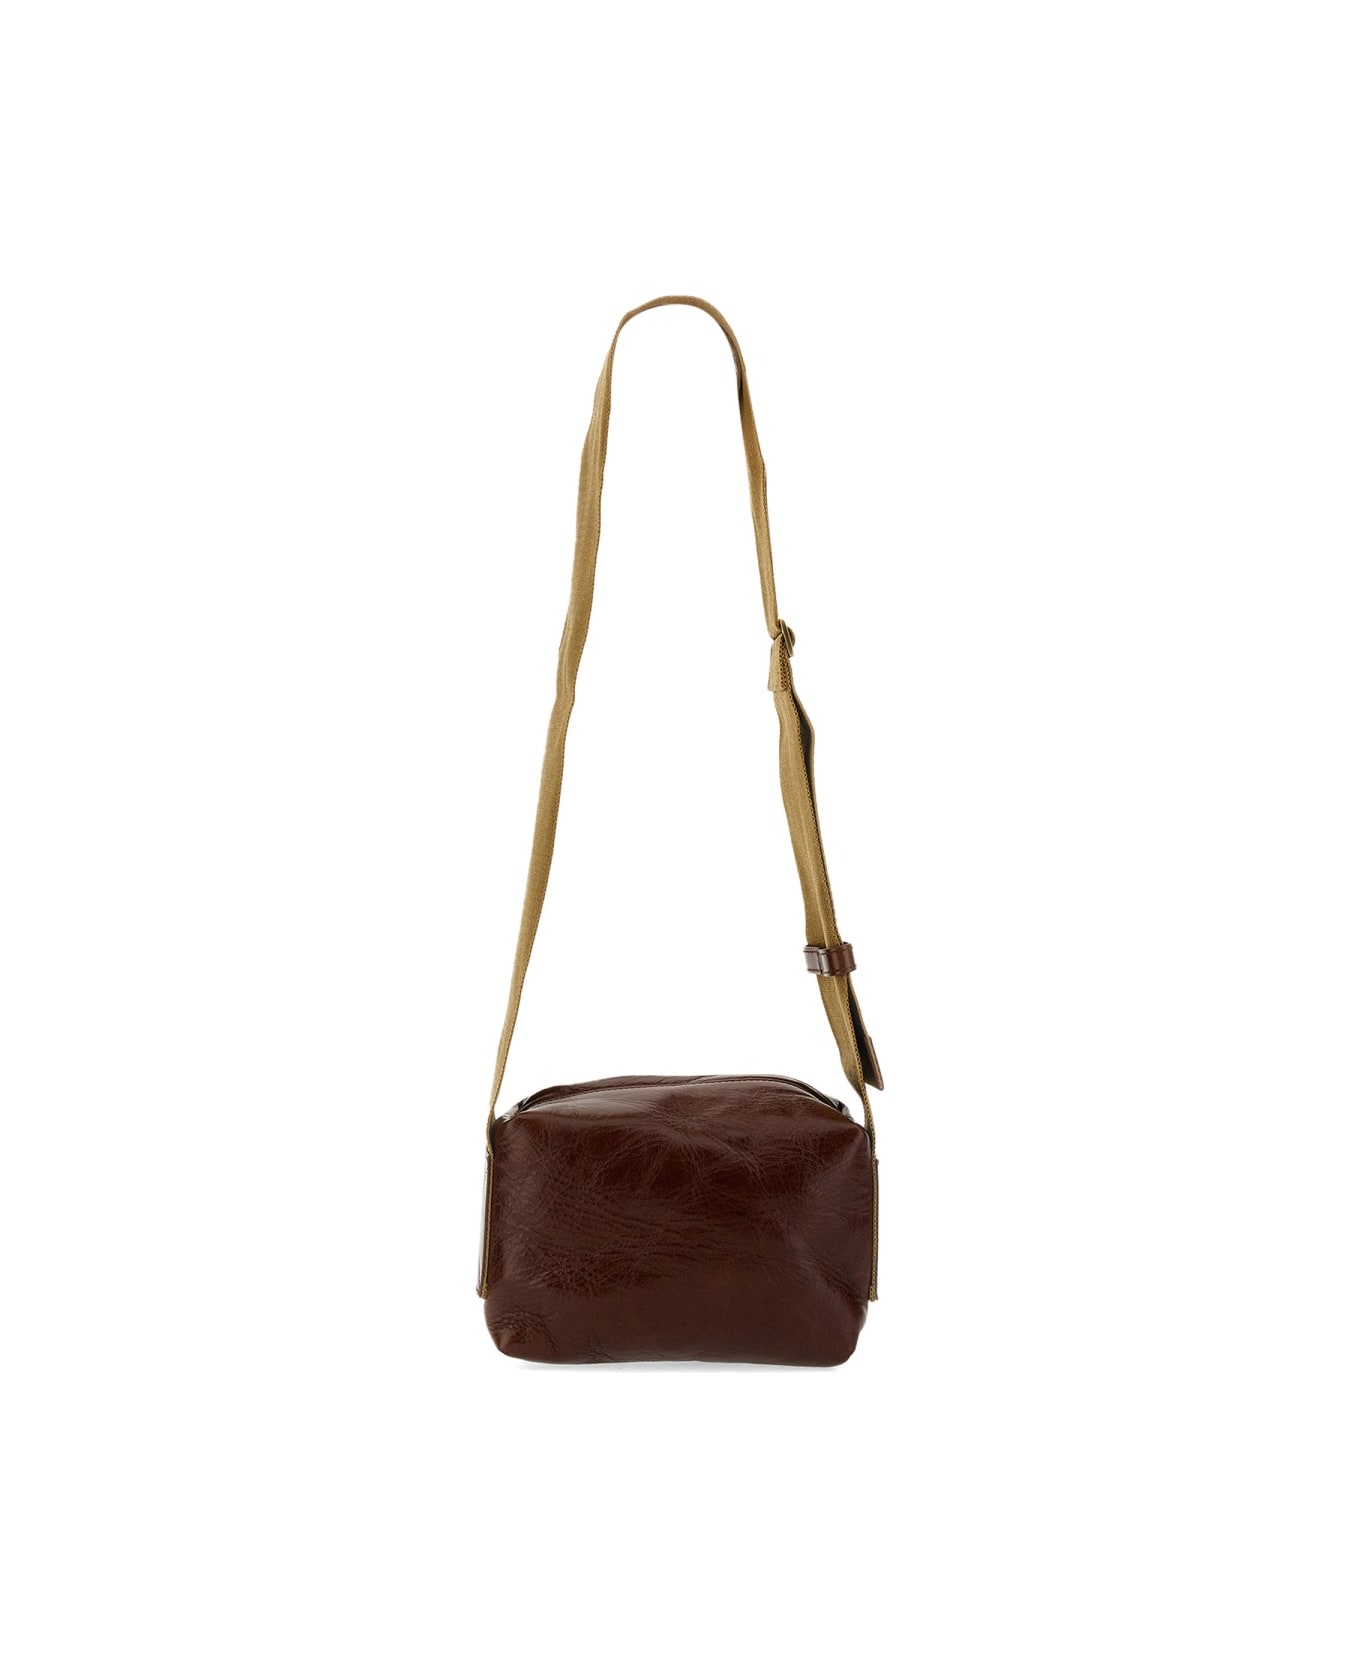 Uma Wang Small Leather Bag - BROWN